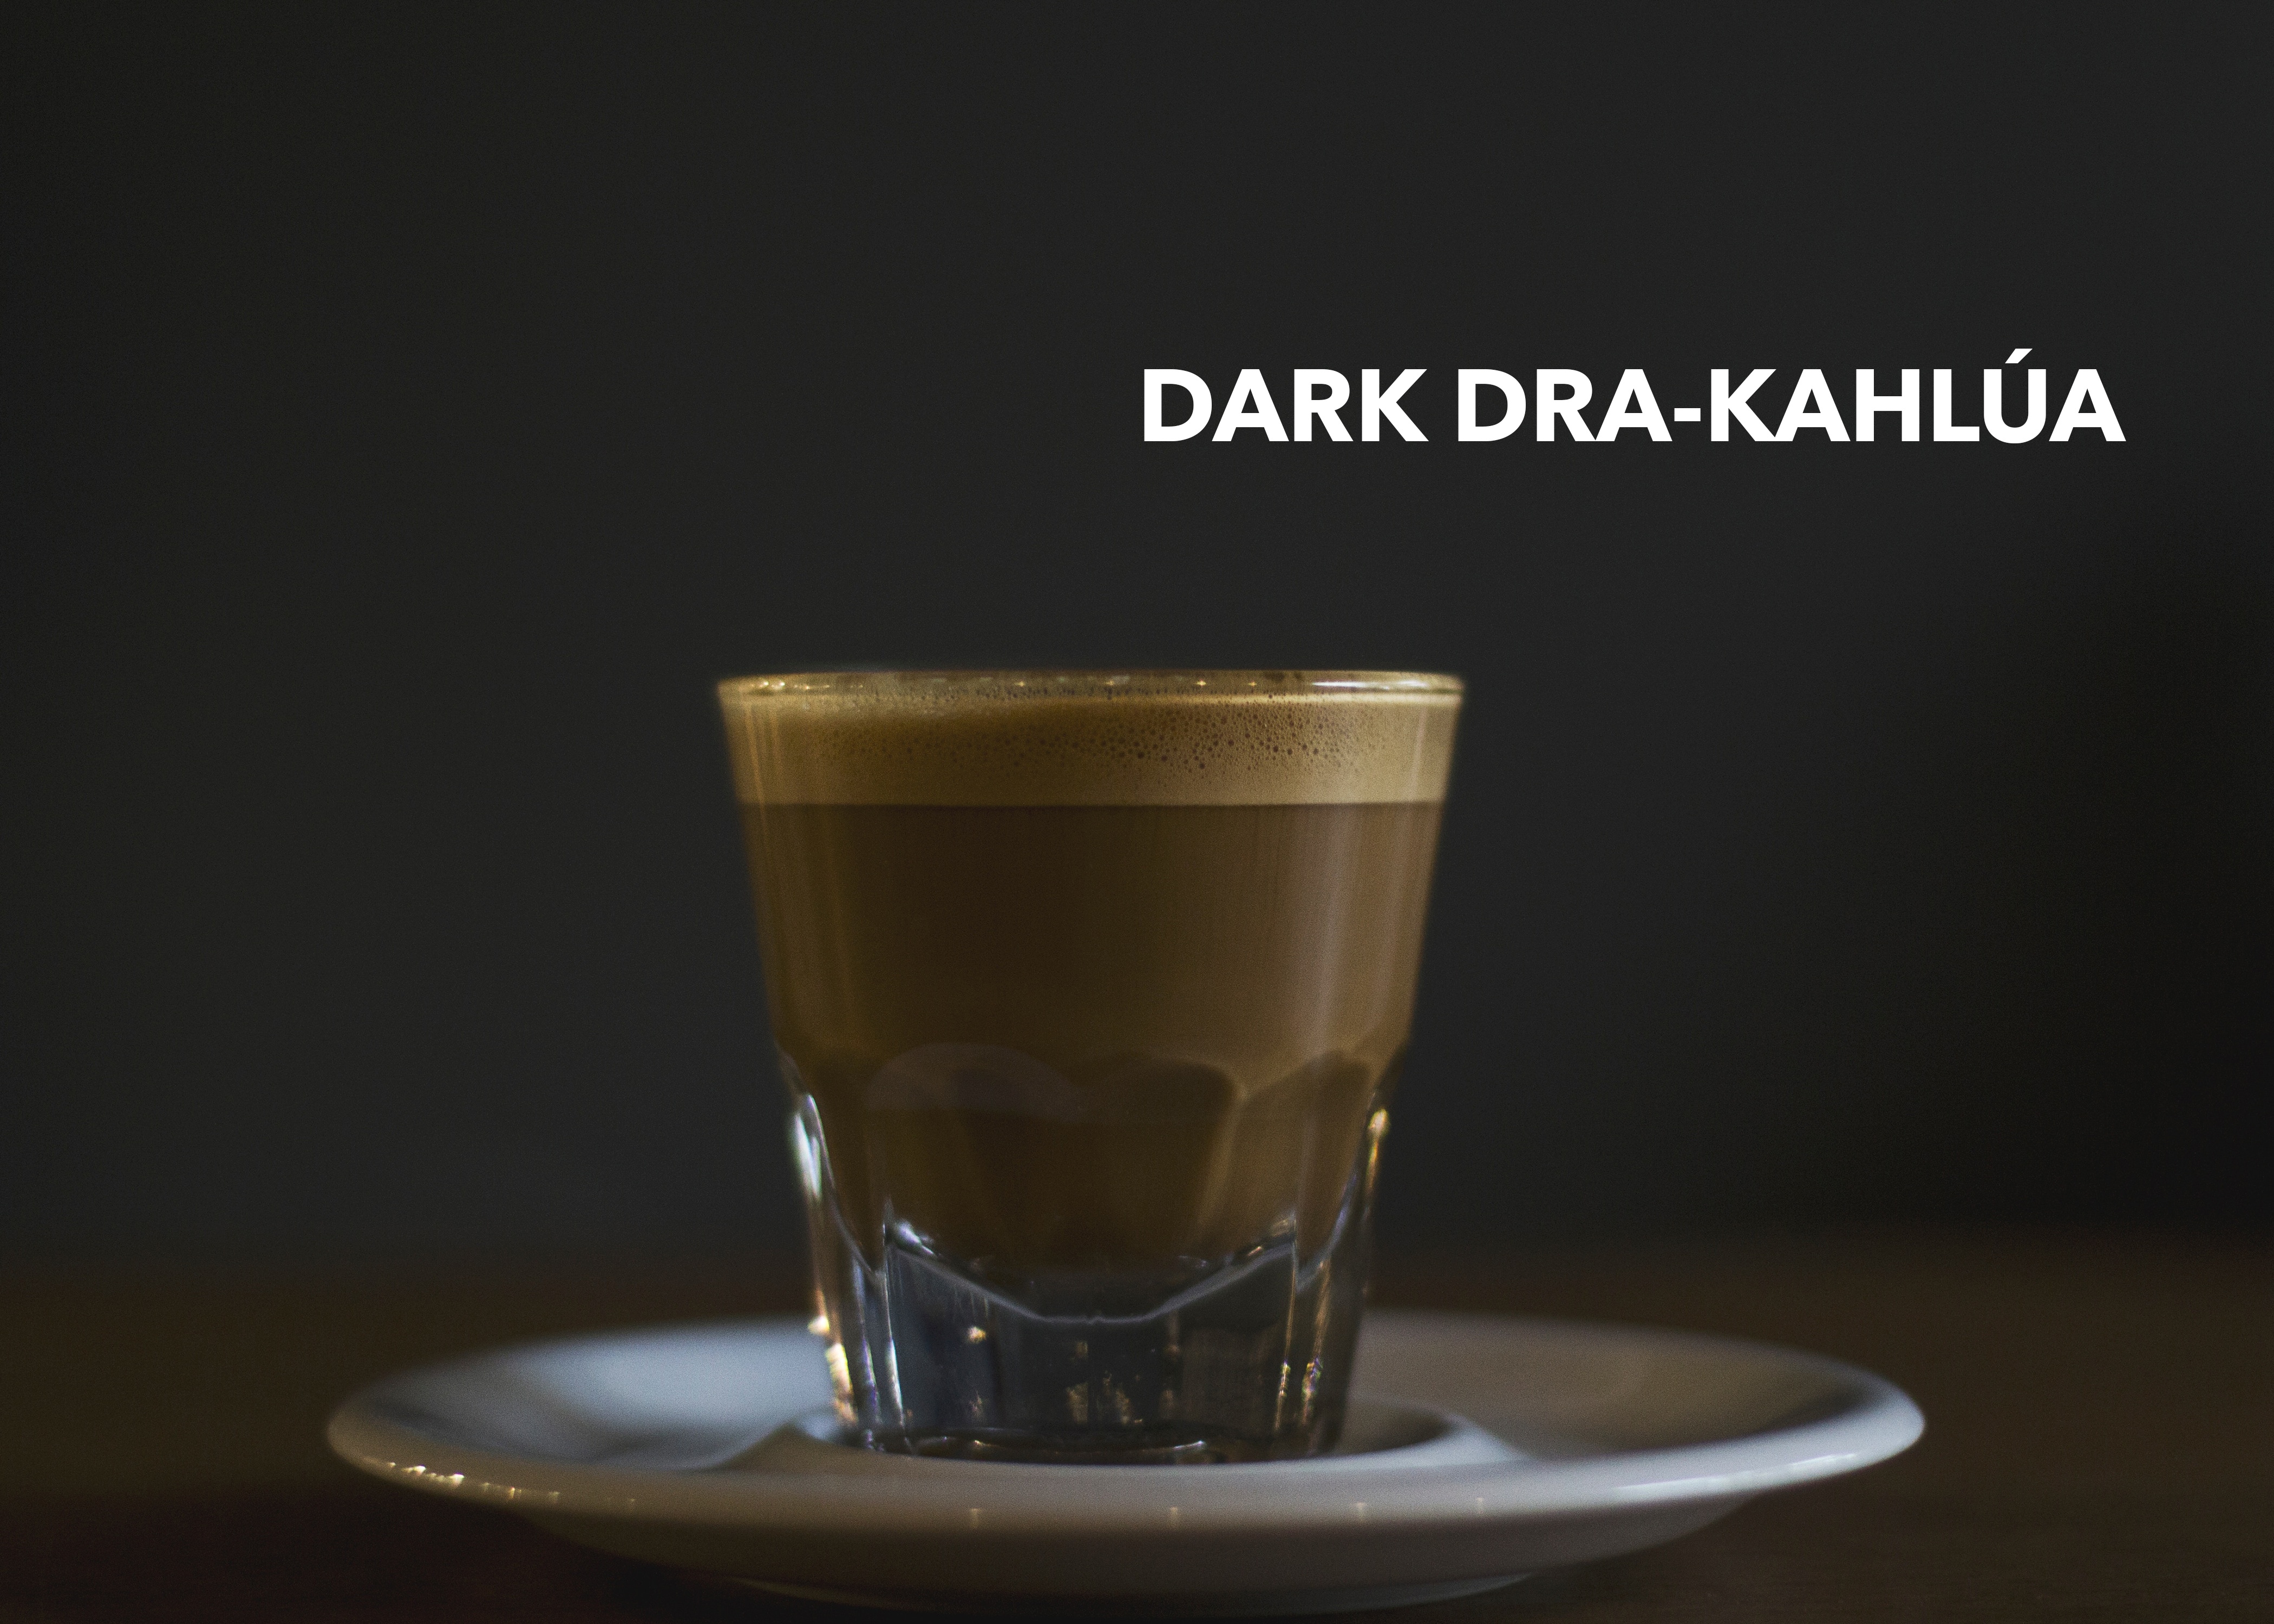 Dark Dra-Kahlua